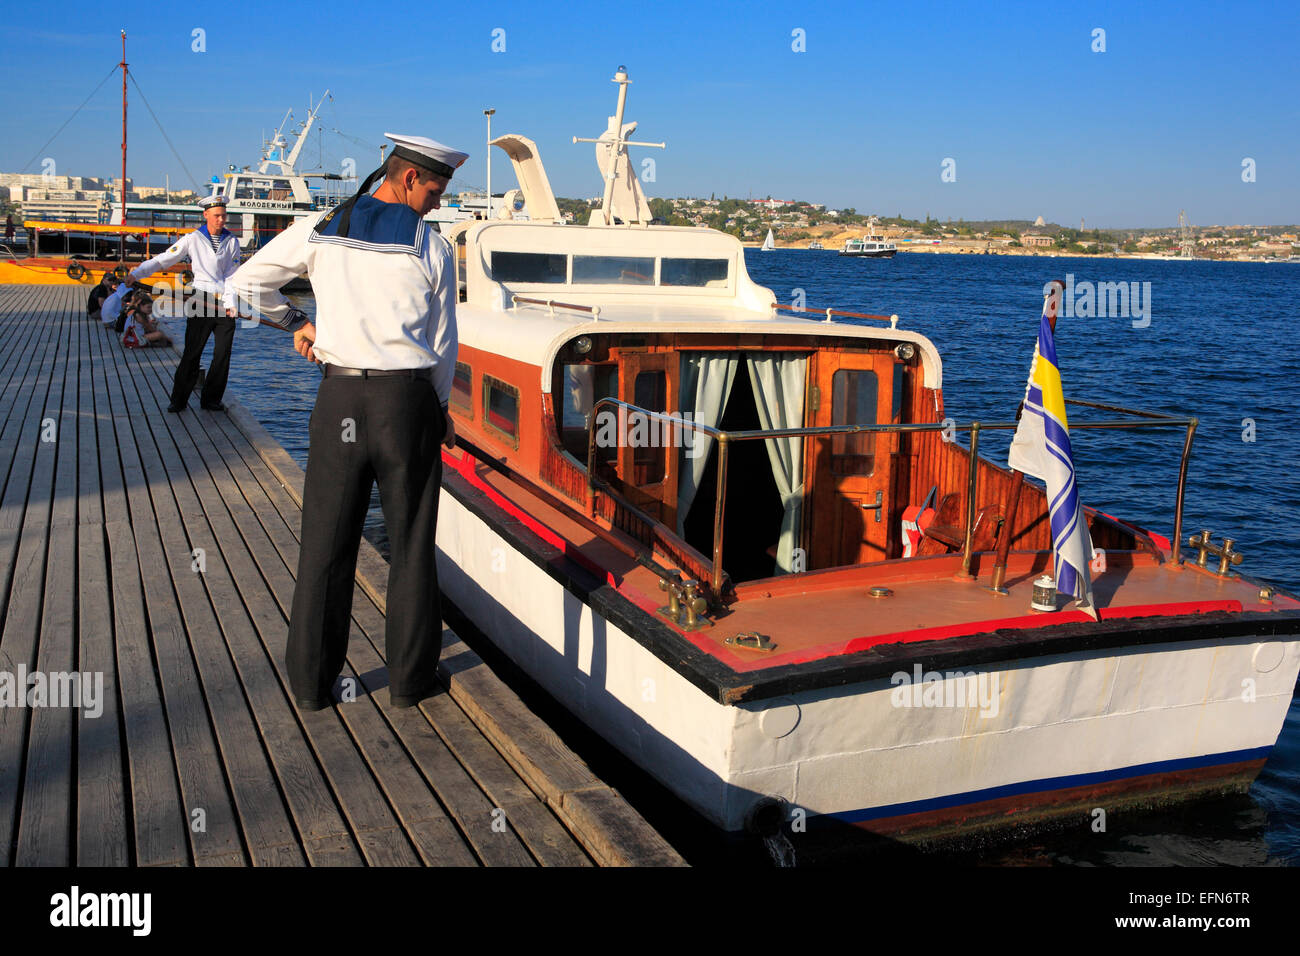 View of Bay of Sevastopol, Sevastopol, Crimea, Ukraine Stock Photo